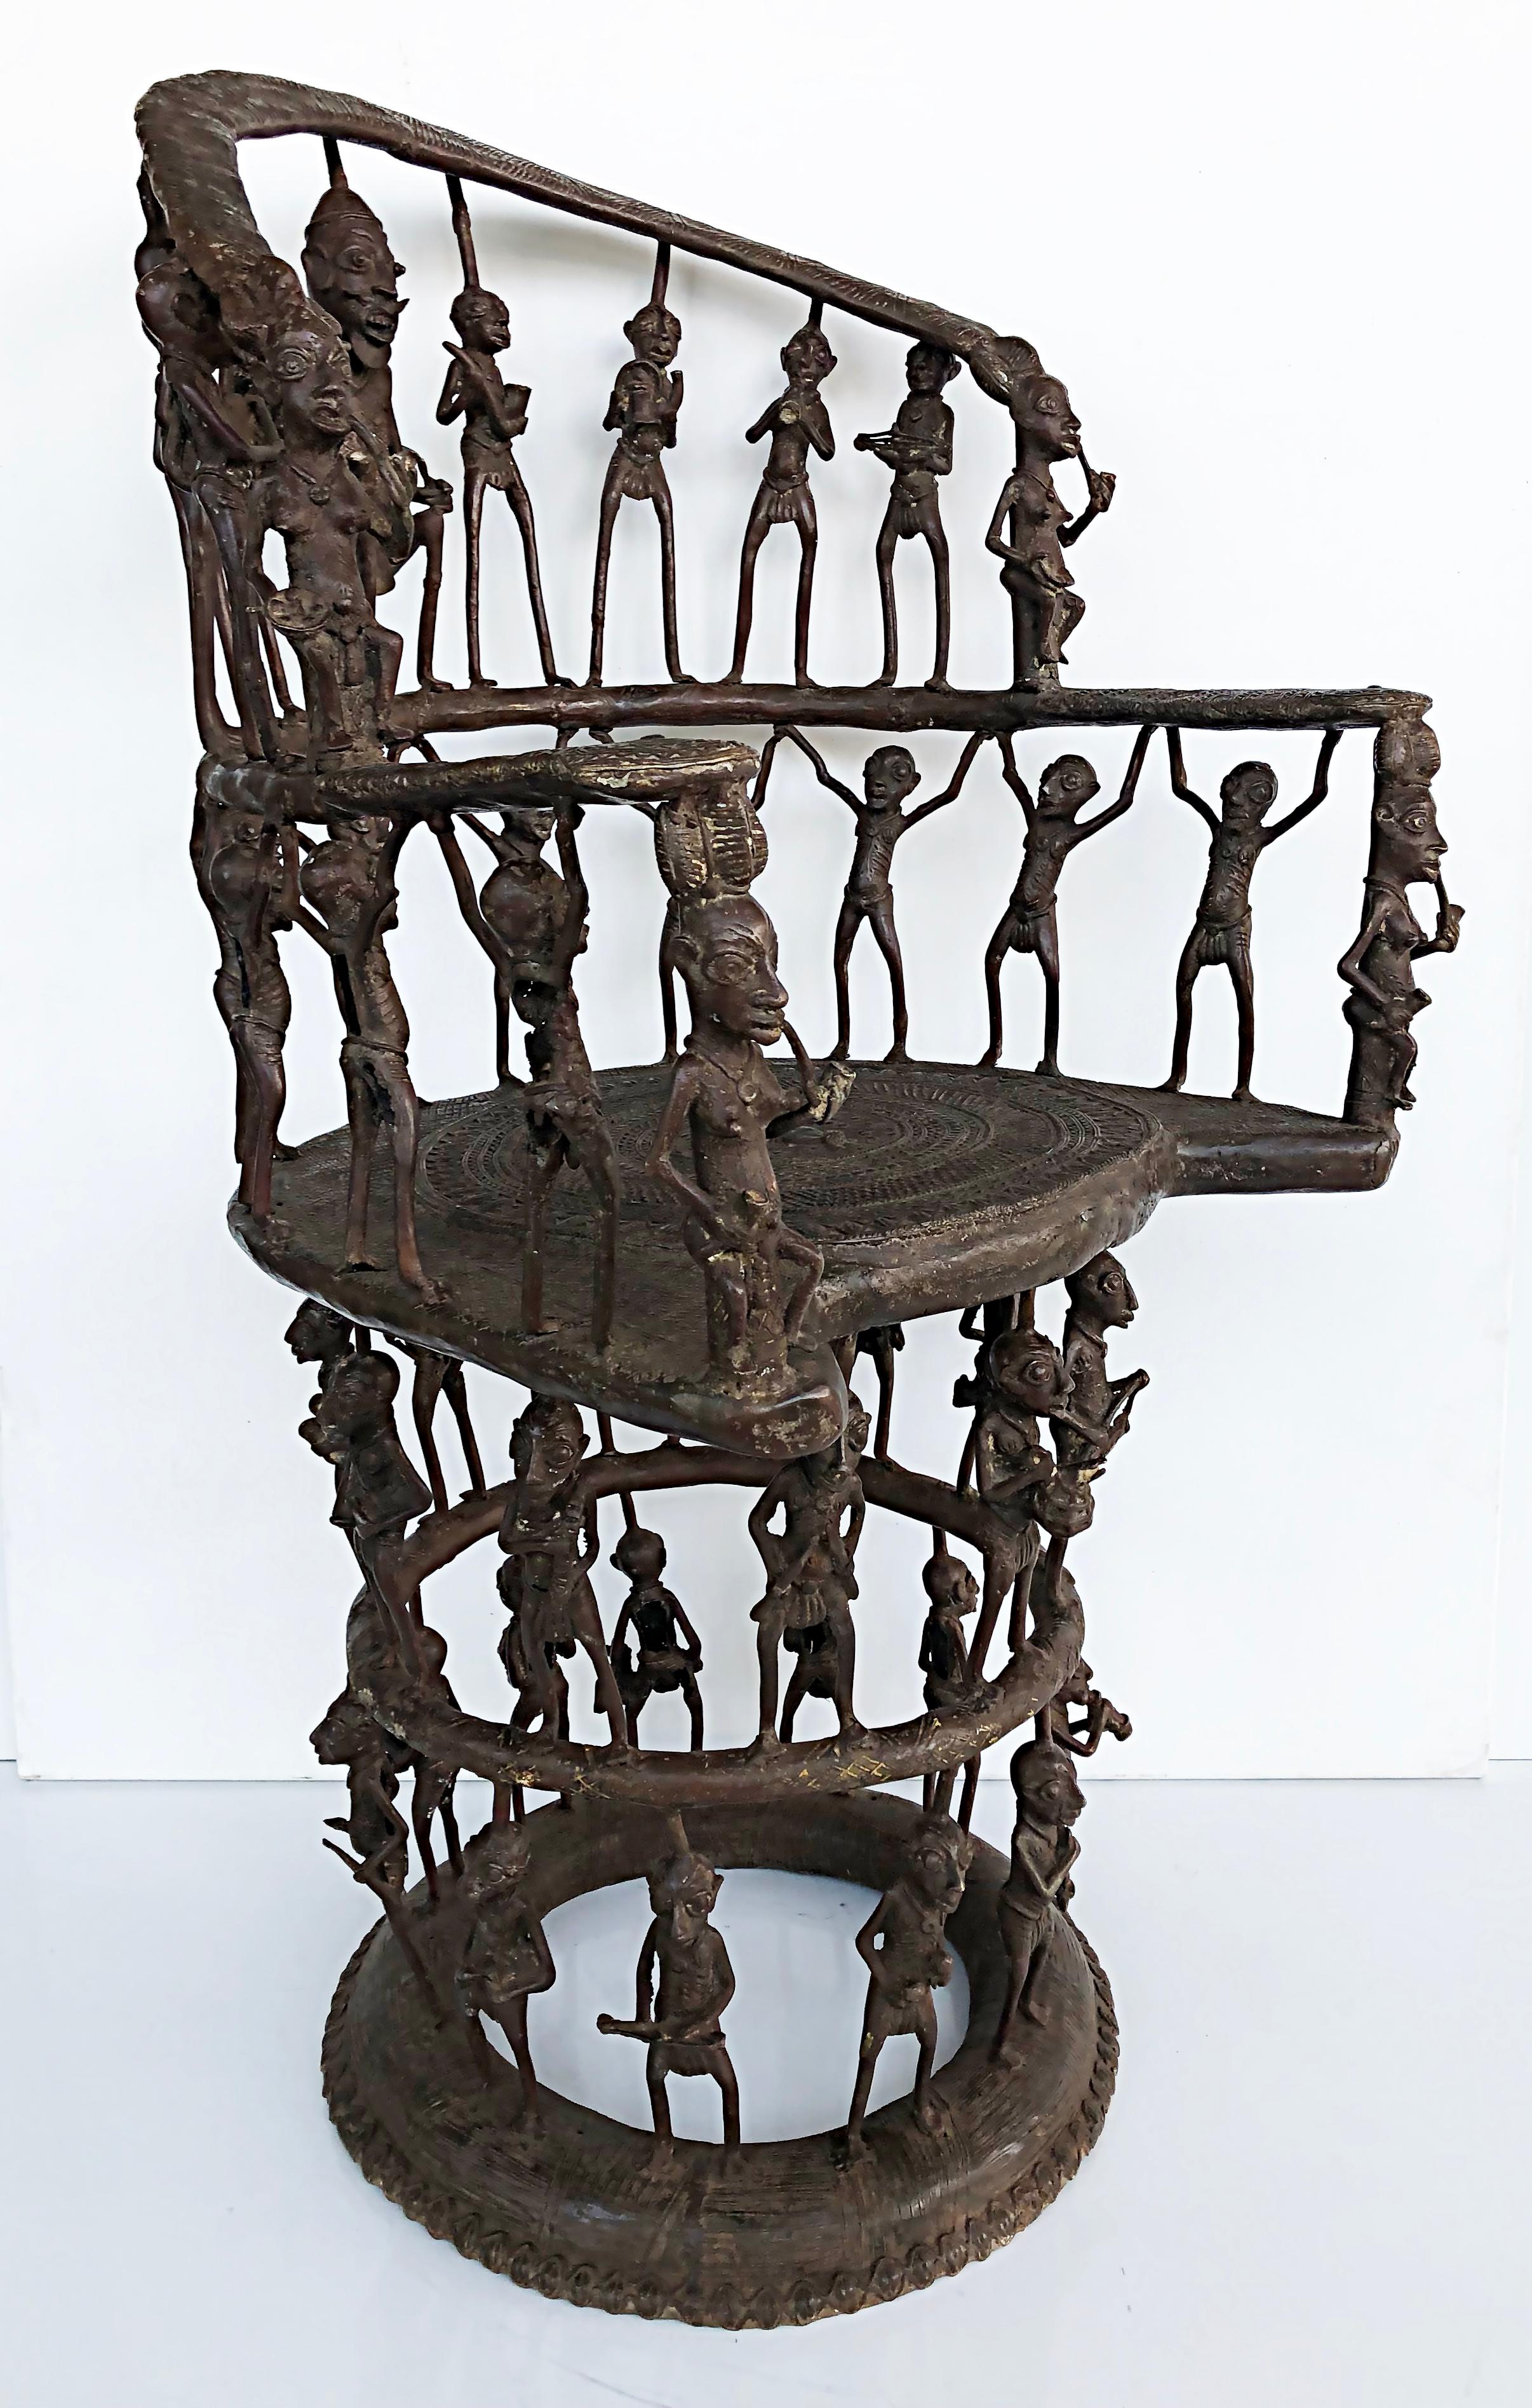 Seltener afrikanischer kameeischer figurativer Thronsessel aus Bronze, 20. Jahrhundert

Zum Verkauf angeboten wird eine große seltene afrikanische Bronze figurativen Thron Stuhl aus Kamerun. Der Stuhl ist eine Kreation des 20. Jahrhunderts nach